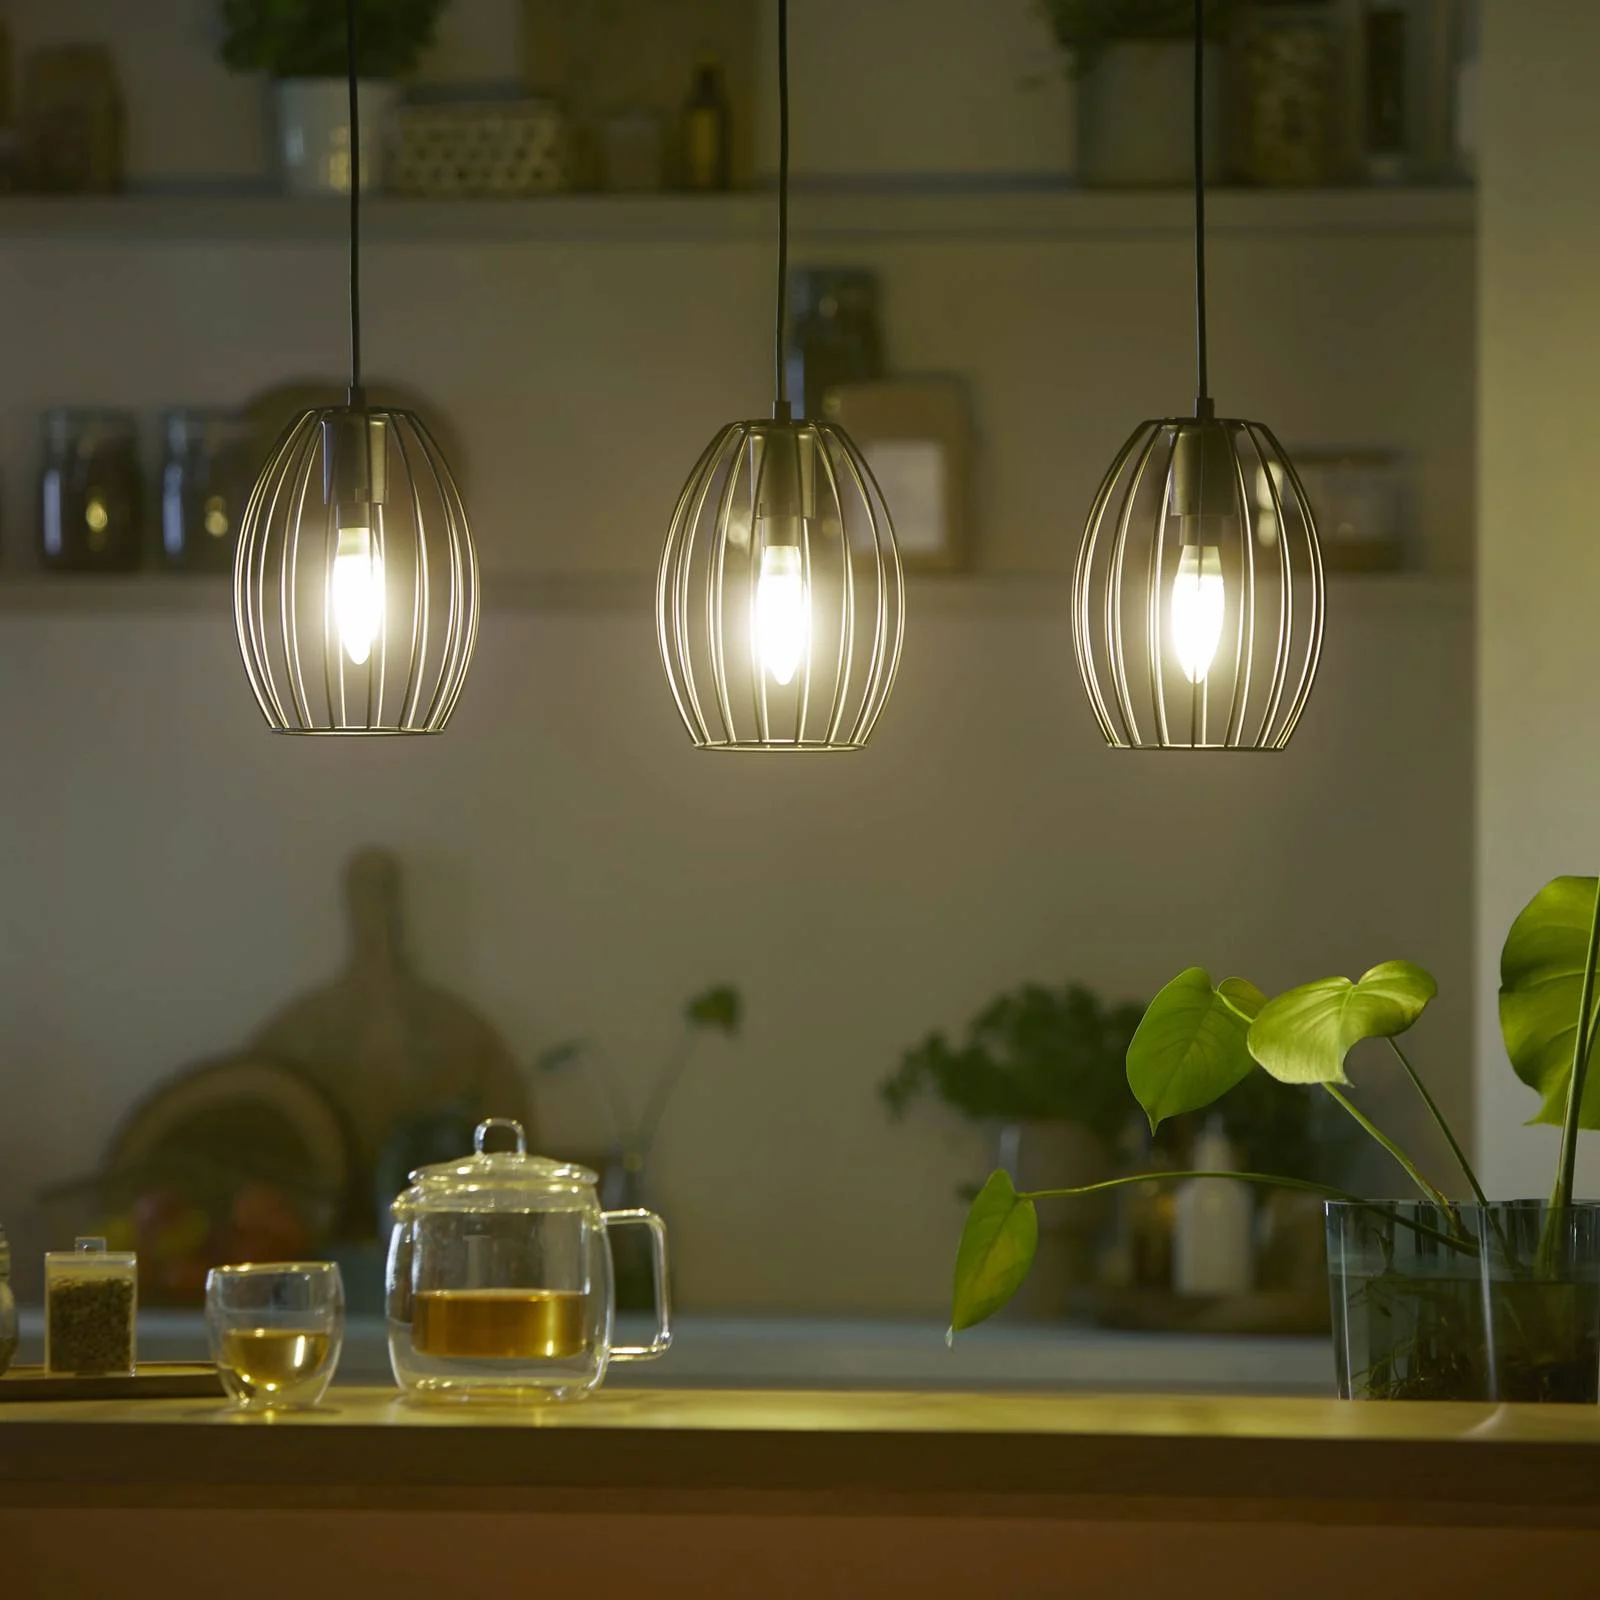 Philips LED Lampe E14 - Kerze B35 2,3W 485lm 2700K ersetzt 40W Einerpack günstig online kaufen